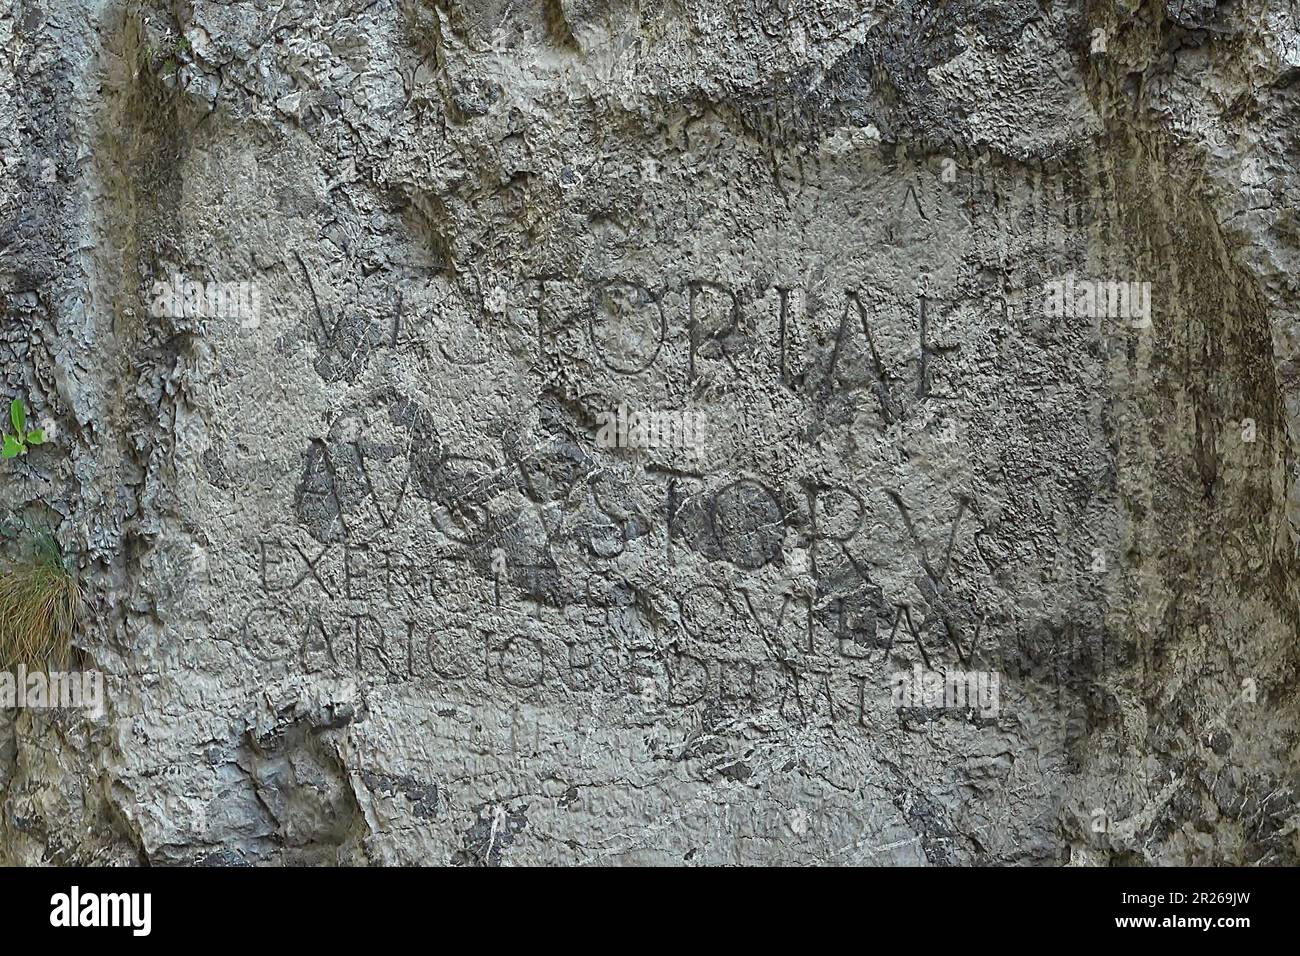 Römische Inschrift auf dem Felsen unter der Burg Trencín aus dem Jahr 179 v. Chr., der Ära der Marcomannischen Kriege, einer Reihe von Kriegen zwischen dem Römischen Reich und dem germanischen Quadi und Marcomanni. Inschrift liest' Victoriae Augustorum Exercitus, qui Laugaricione sedit, mil(ites) l(egiones) II DCCCLV' Stockfoto